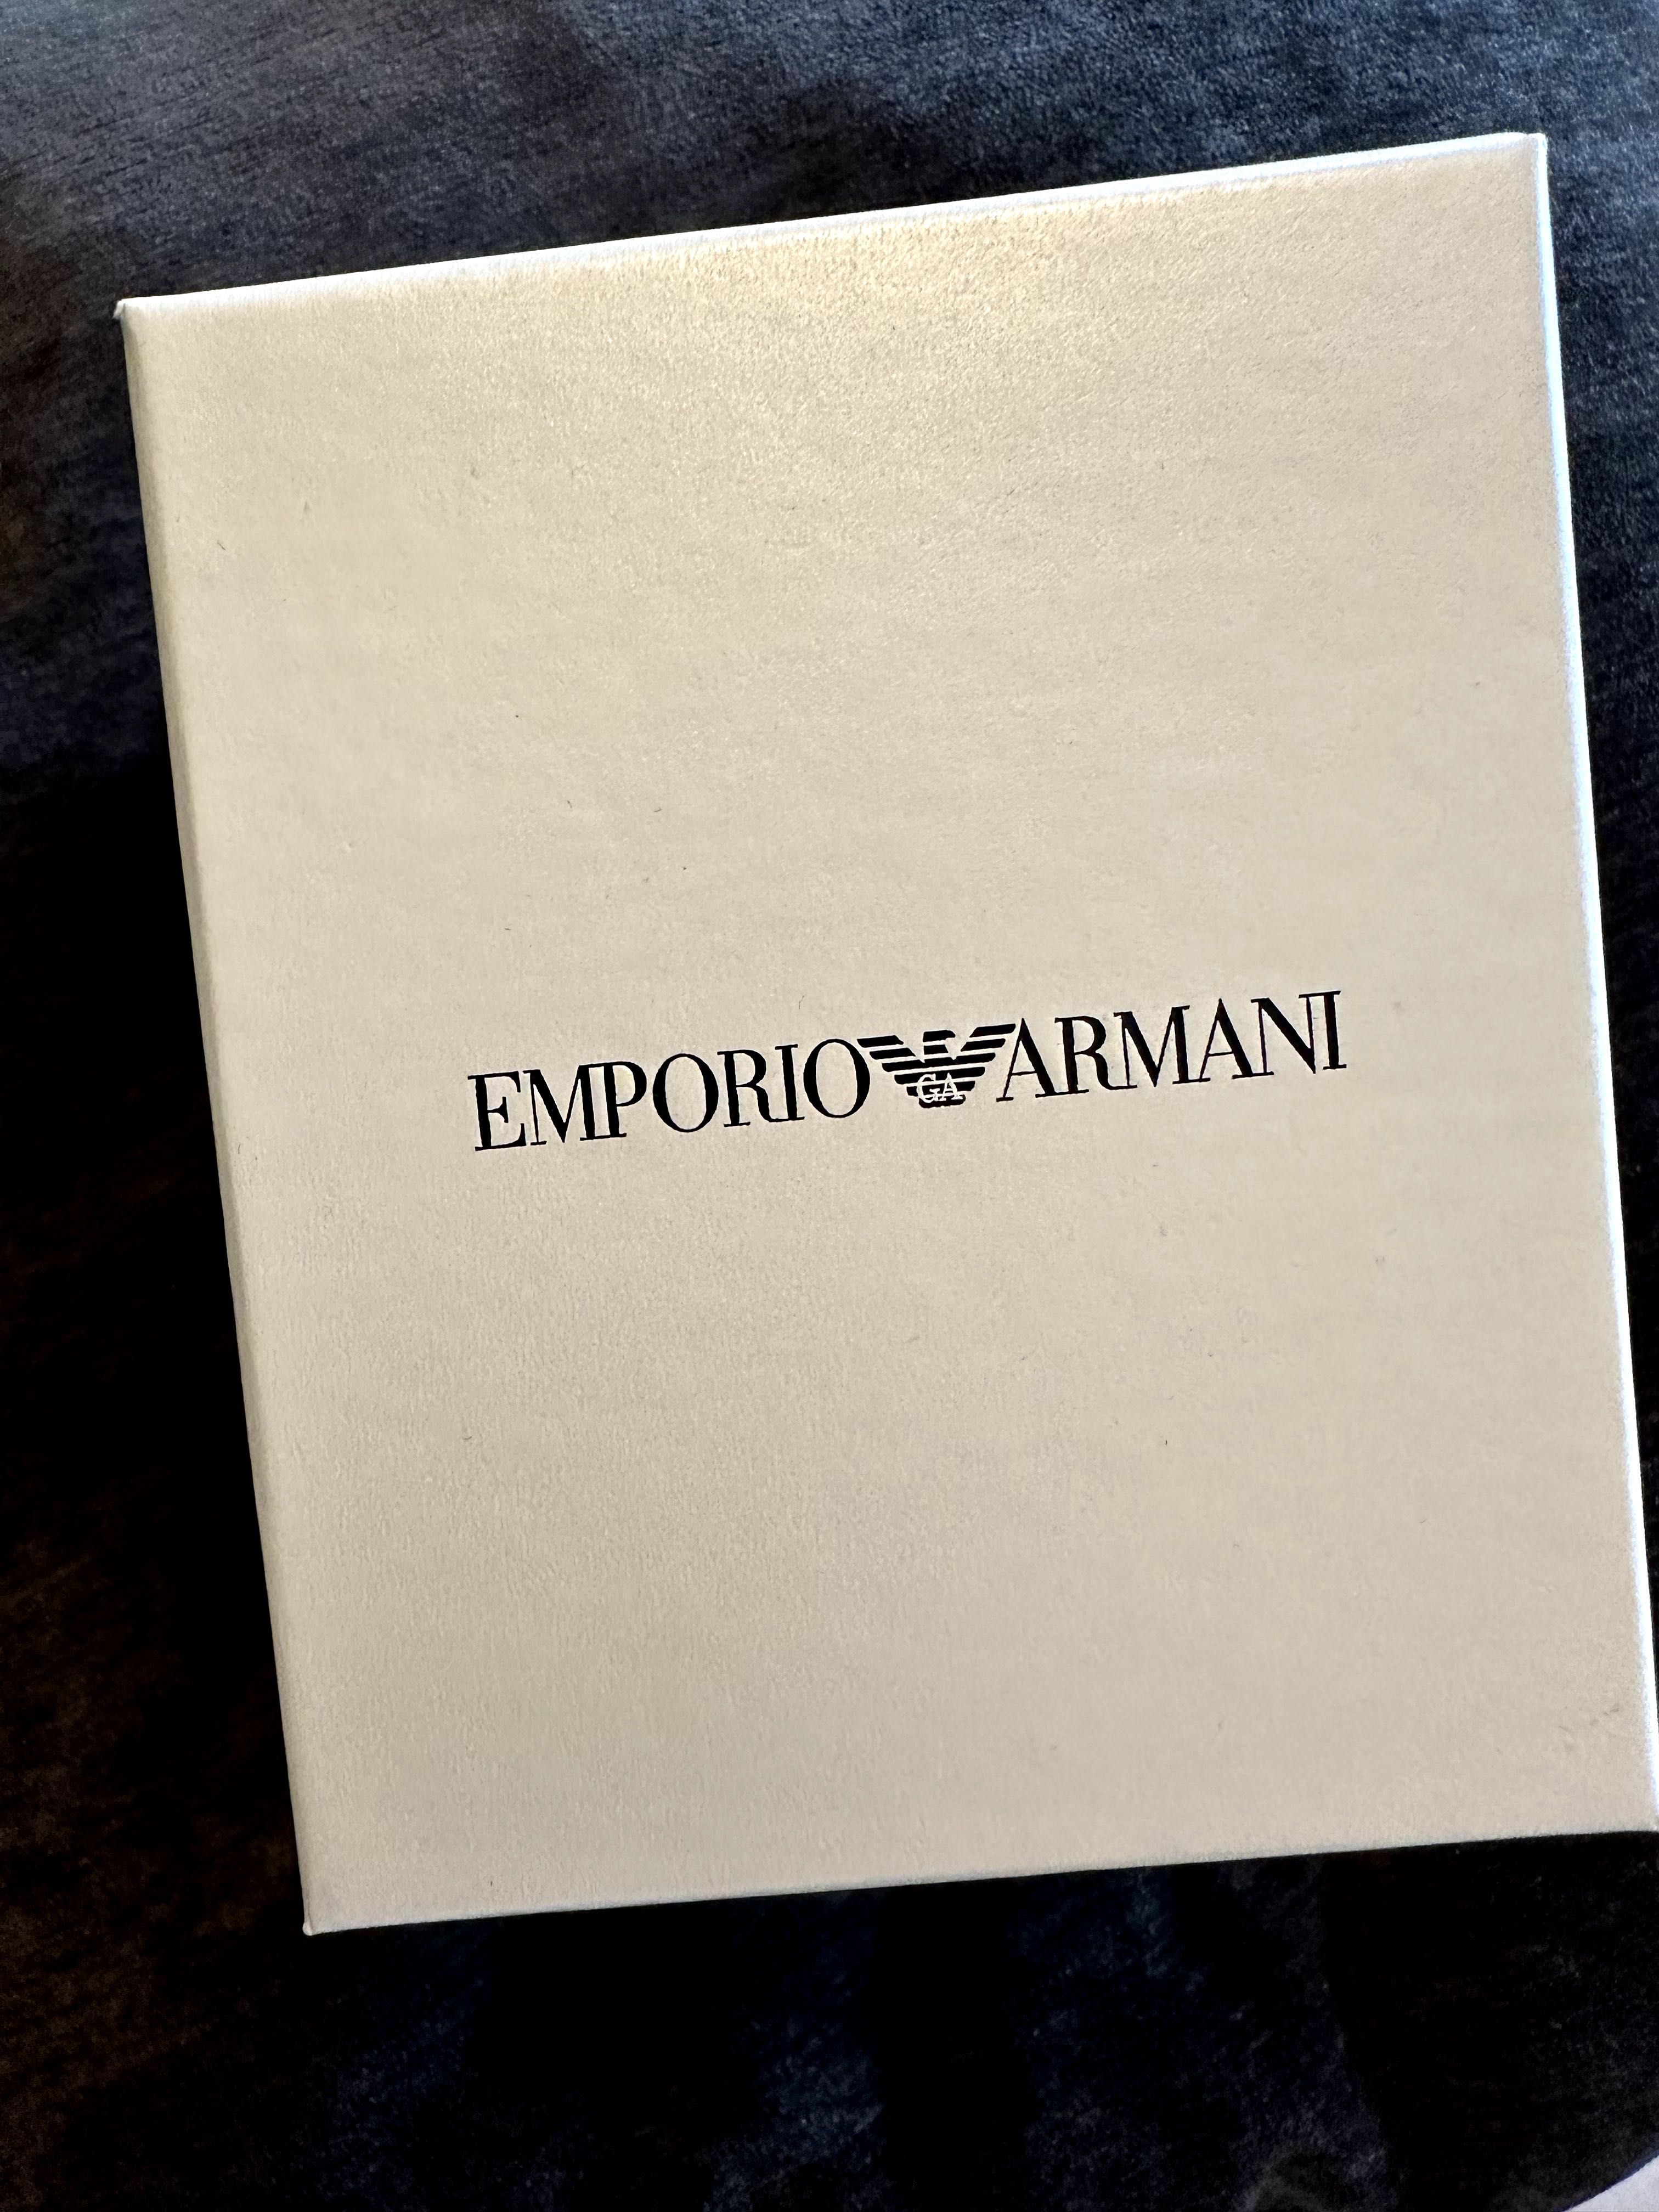 Ceas Emporio Armani cu curea reversibilă (nou, cu etichetă și cutie)